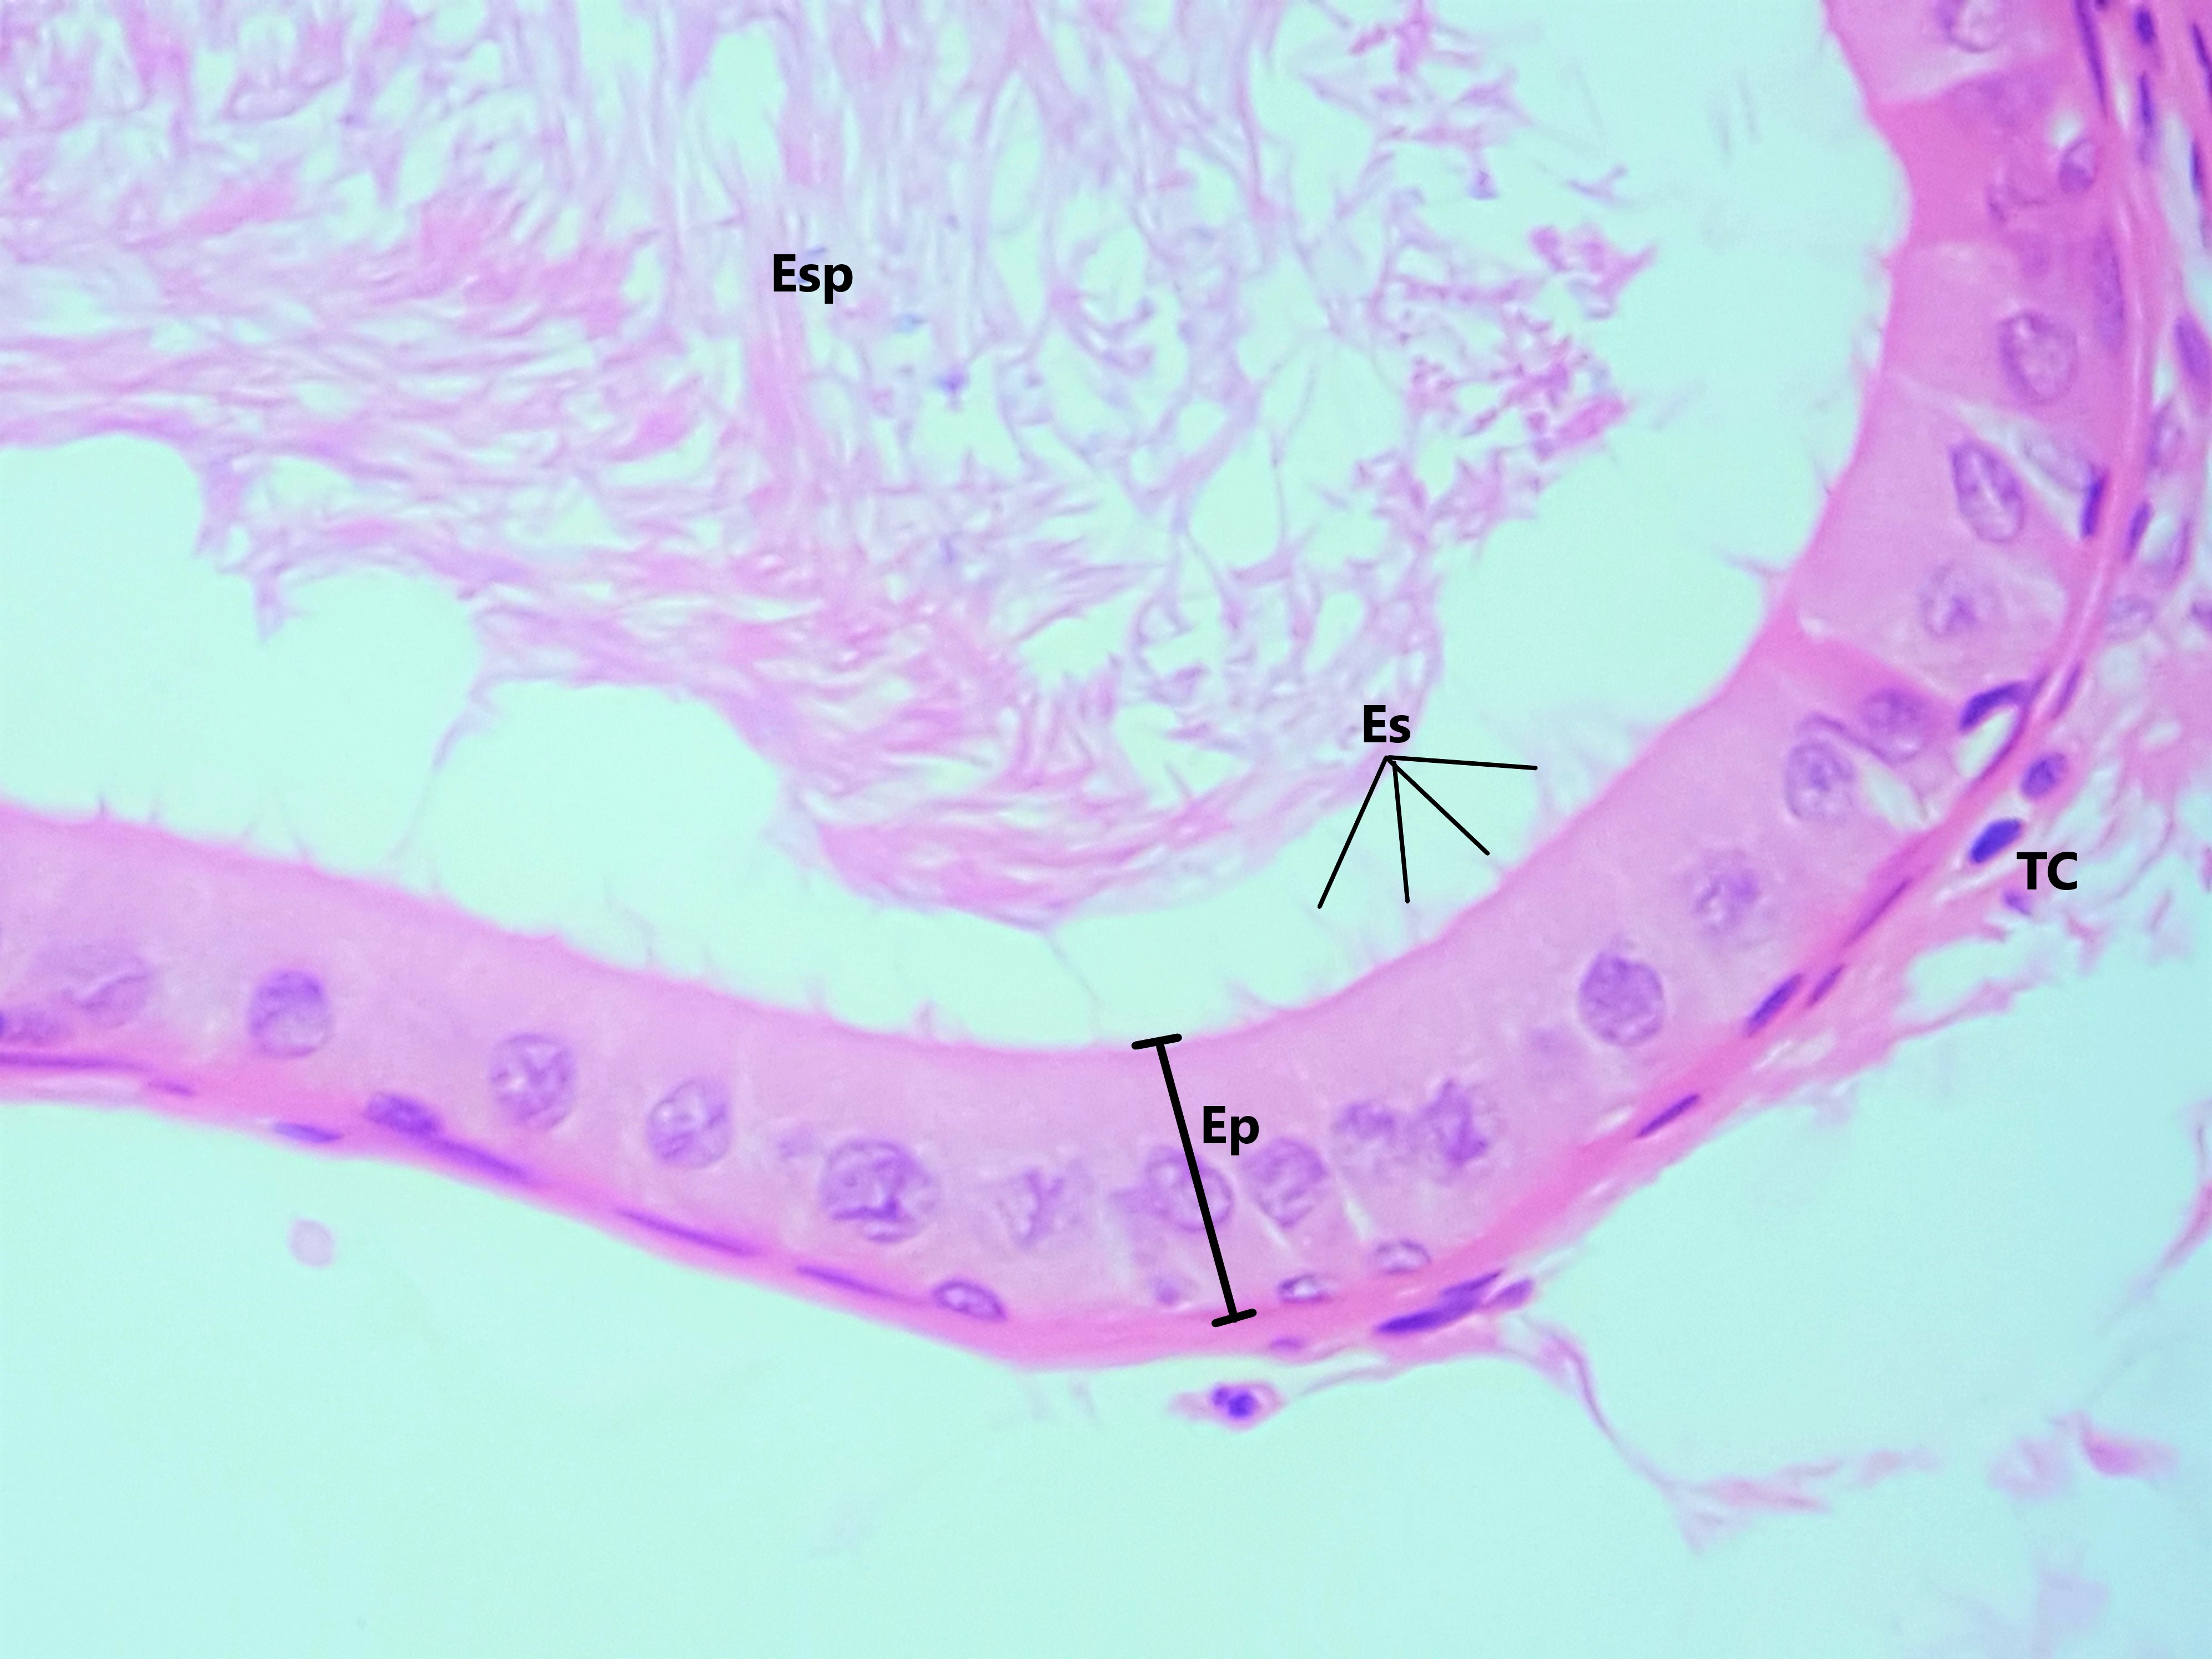 Lâmina: Epidídimo (H&E - Aumento: 400x). Em maior aumento evidenciando o epitélio pseudoestratificado colunar (Ep) com esterecílios (Es) que reveste o ducto epididimário. No estão espermatozódes (Esp) e subjacente ao epitélio, o tecido conjuntivo (TC).